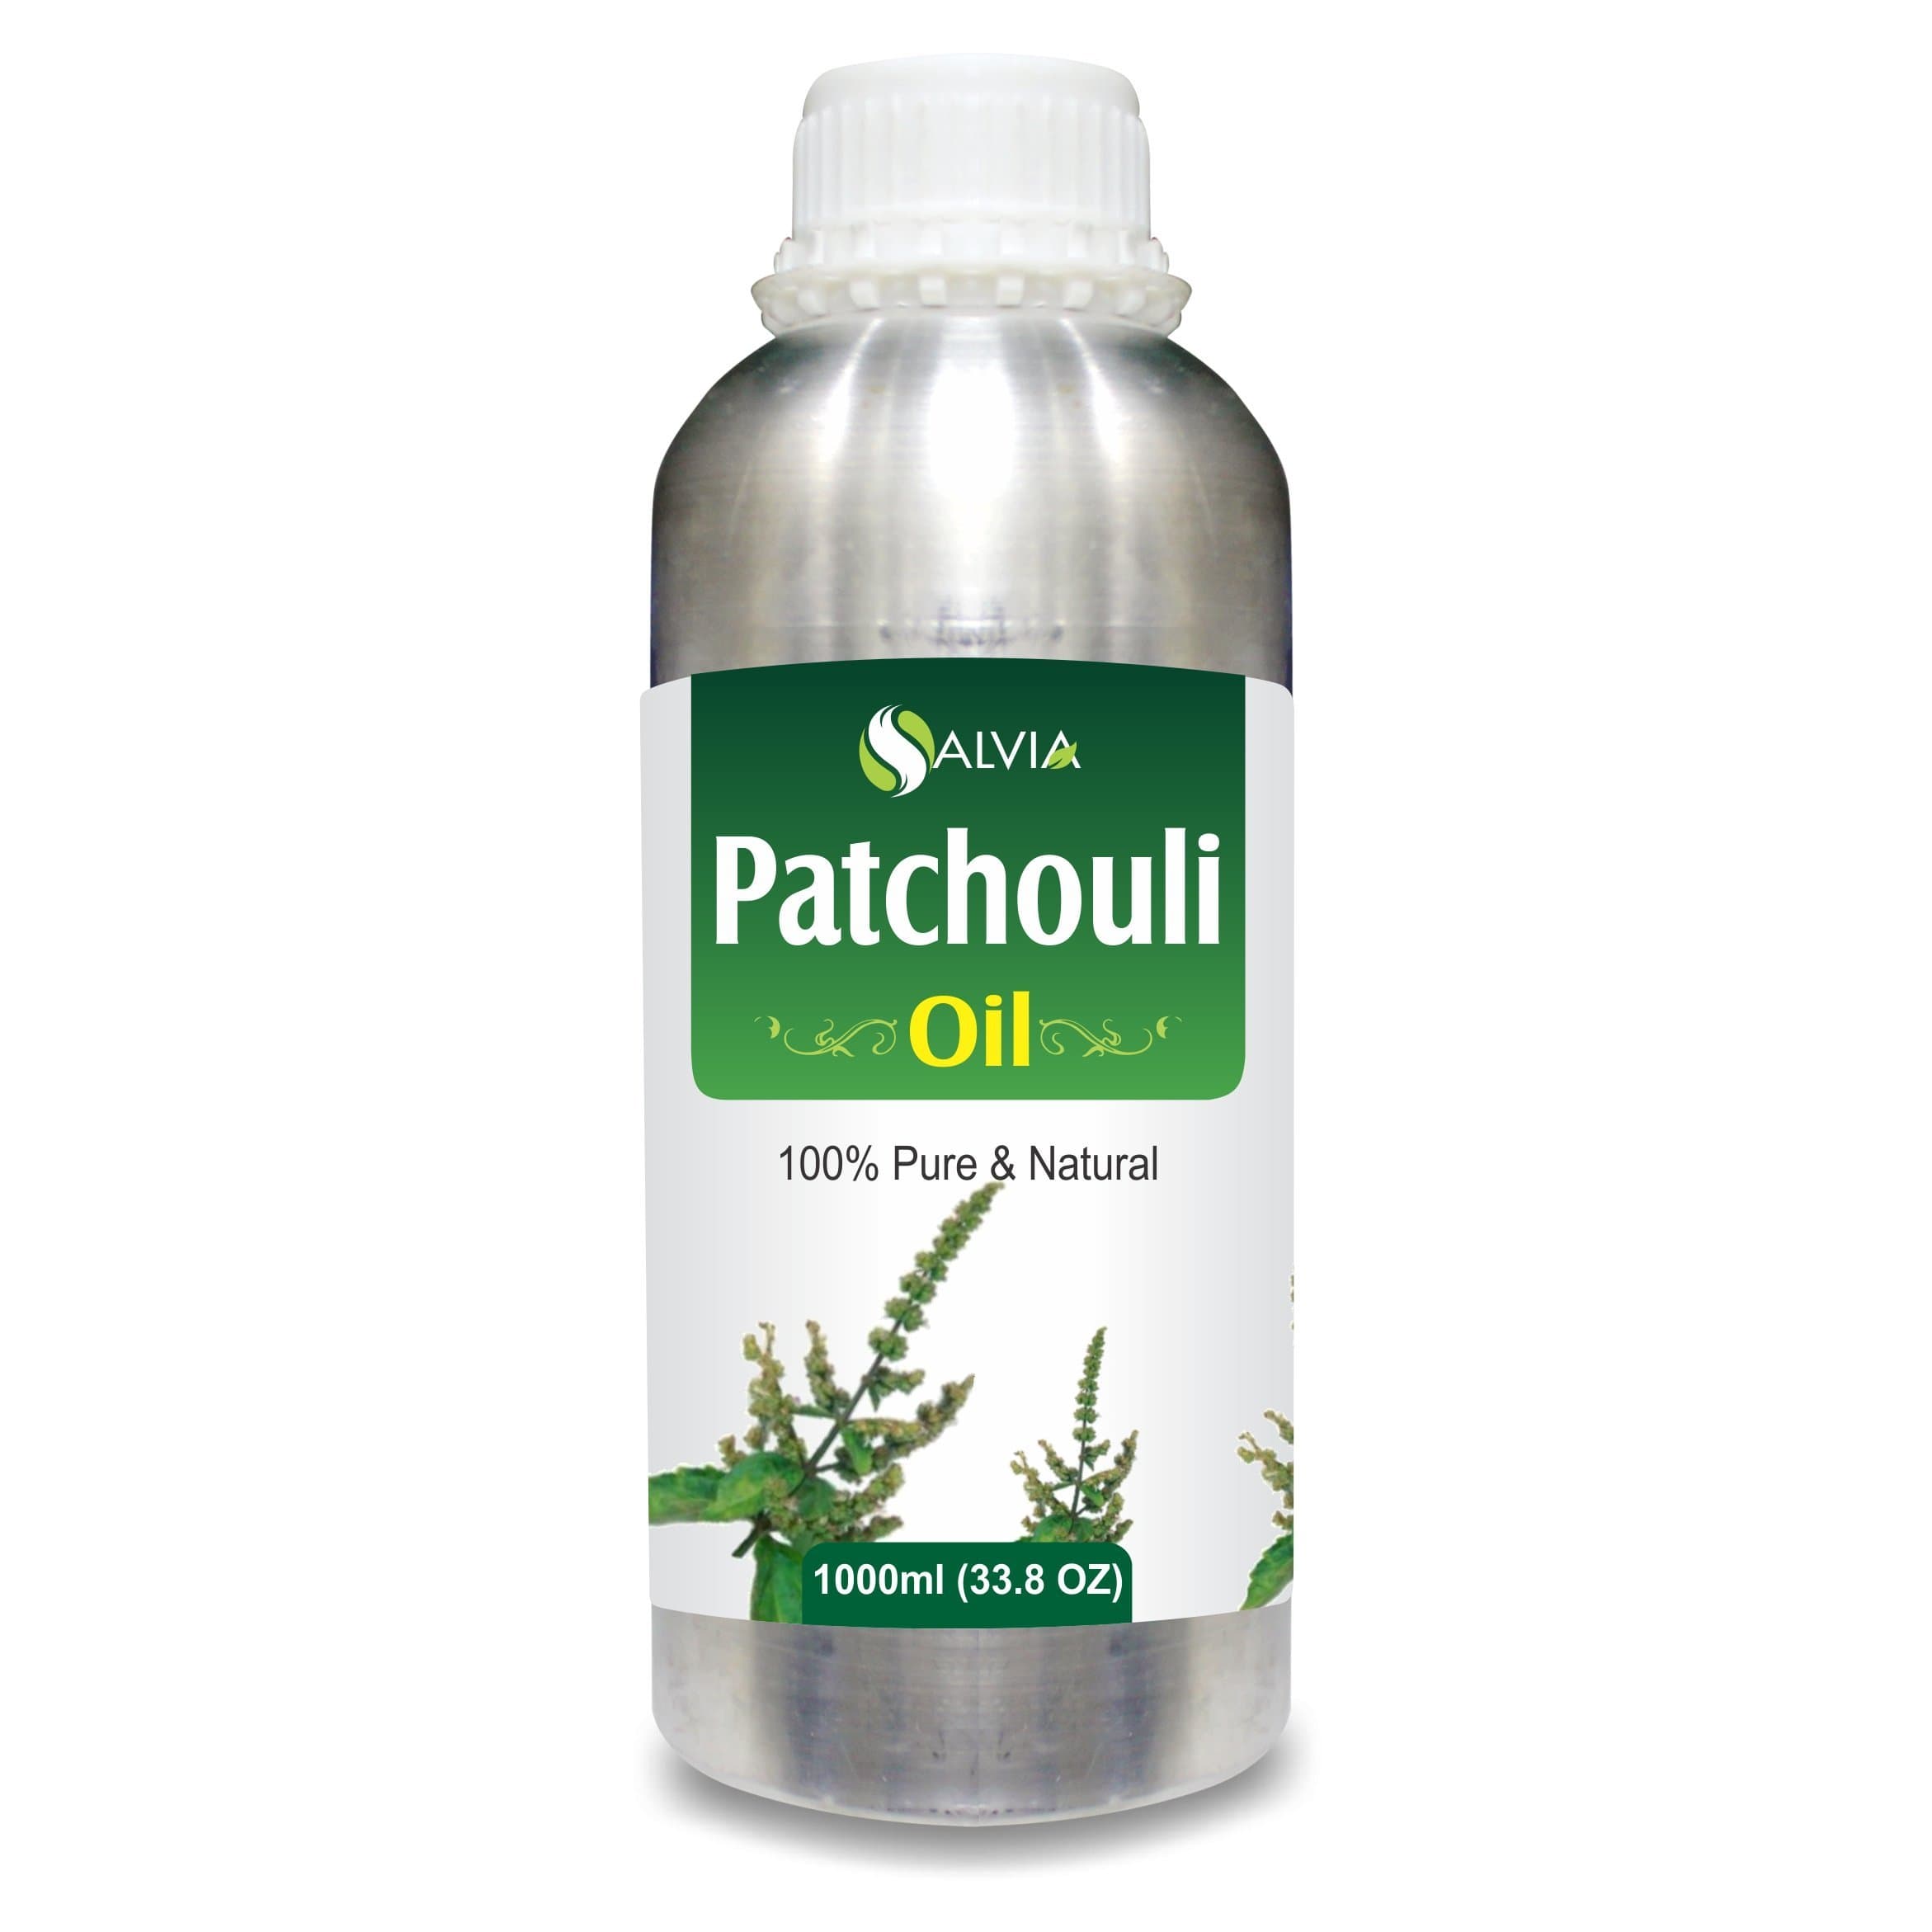 patchouli oil benefits 